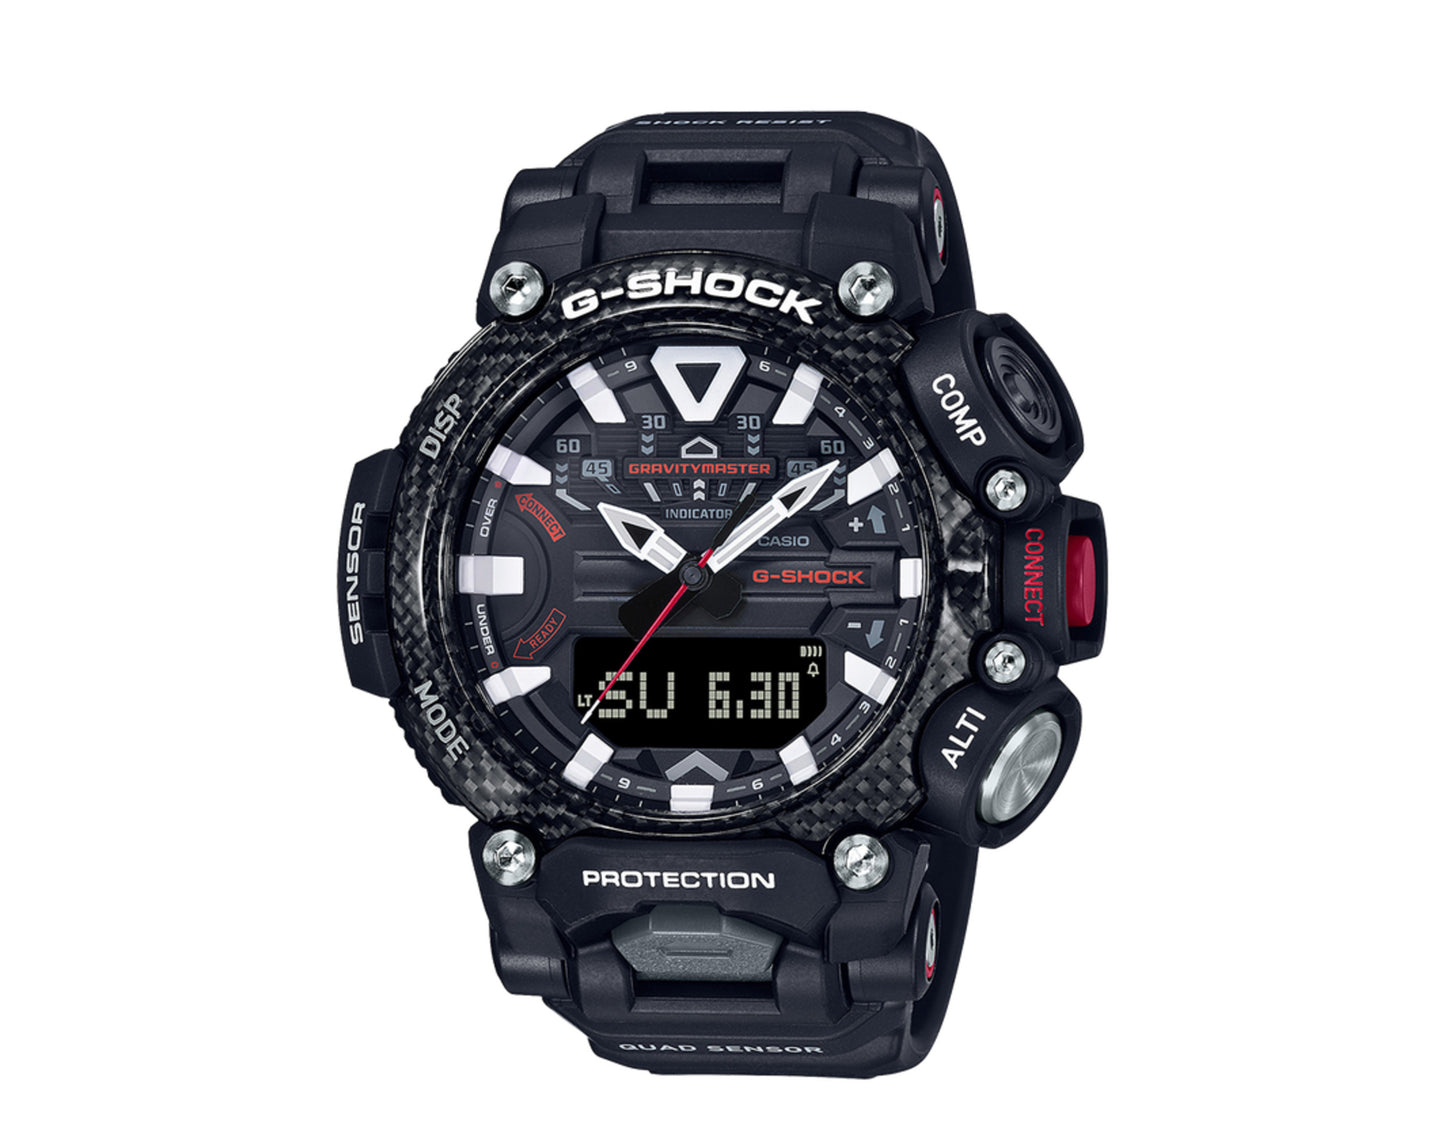 Casio G-Shock GRB200 GravityMaster Analog Digital Resin Black Watch GRB200-1A